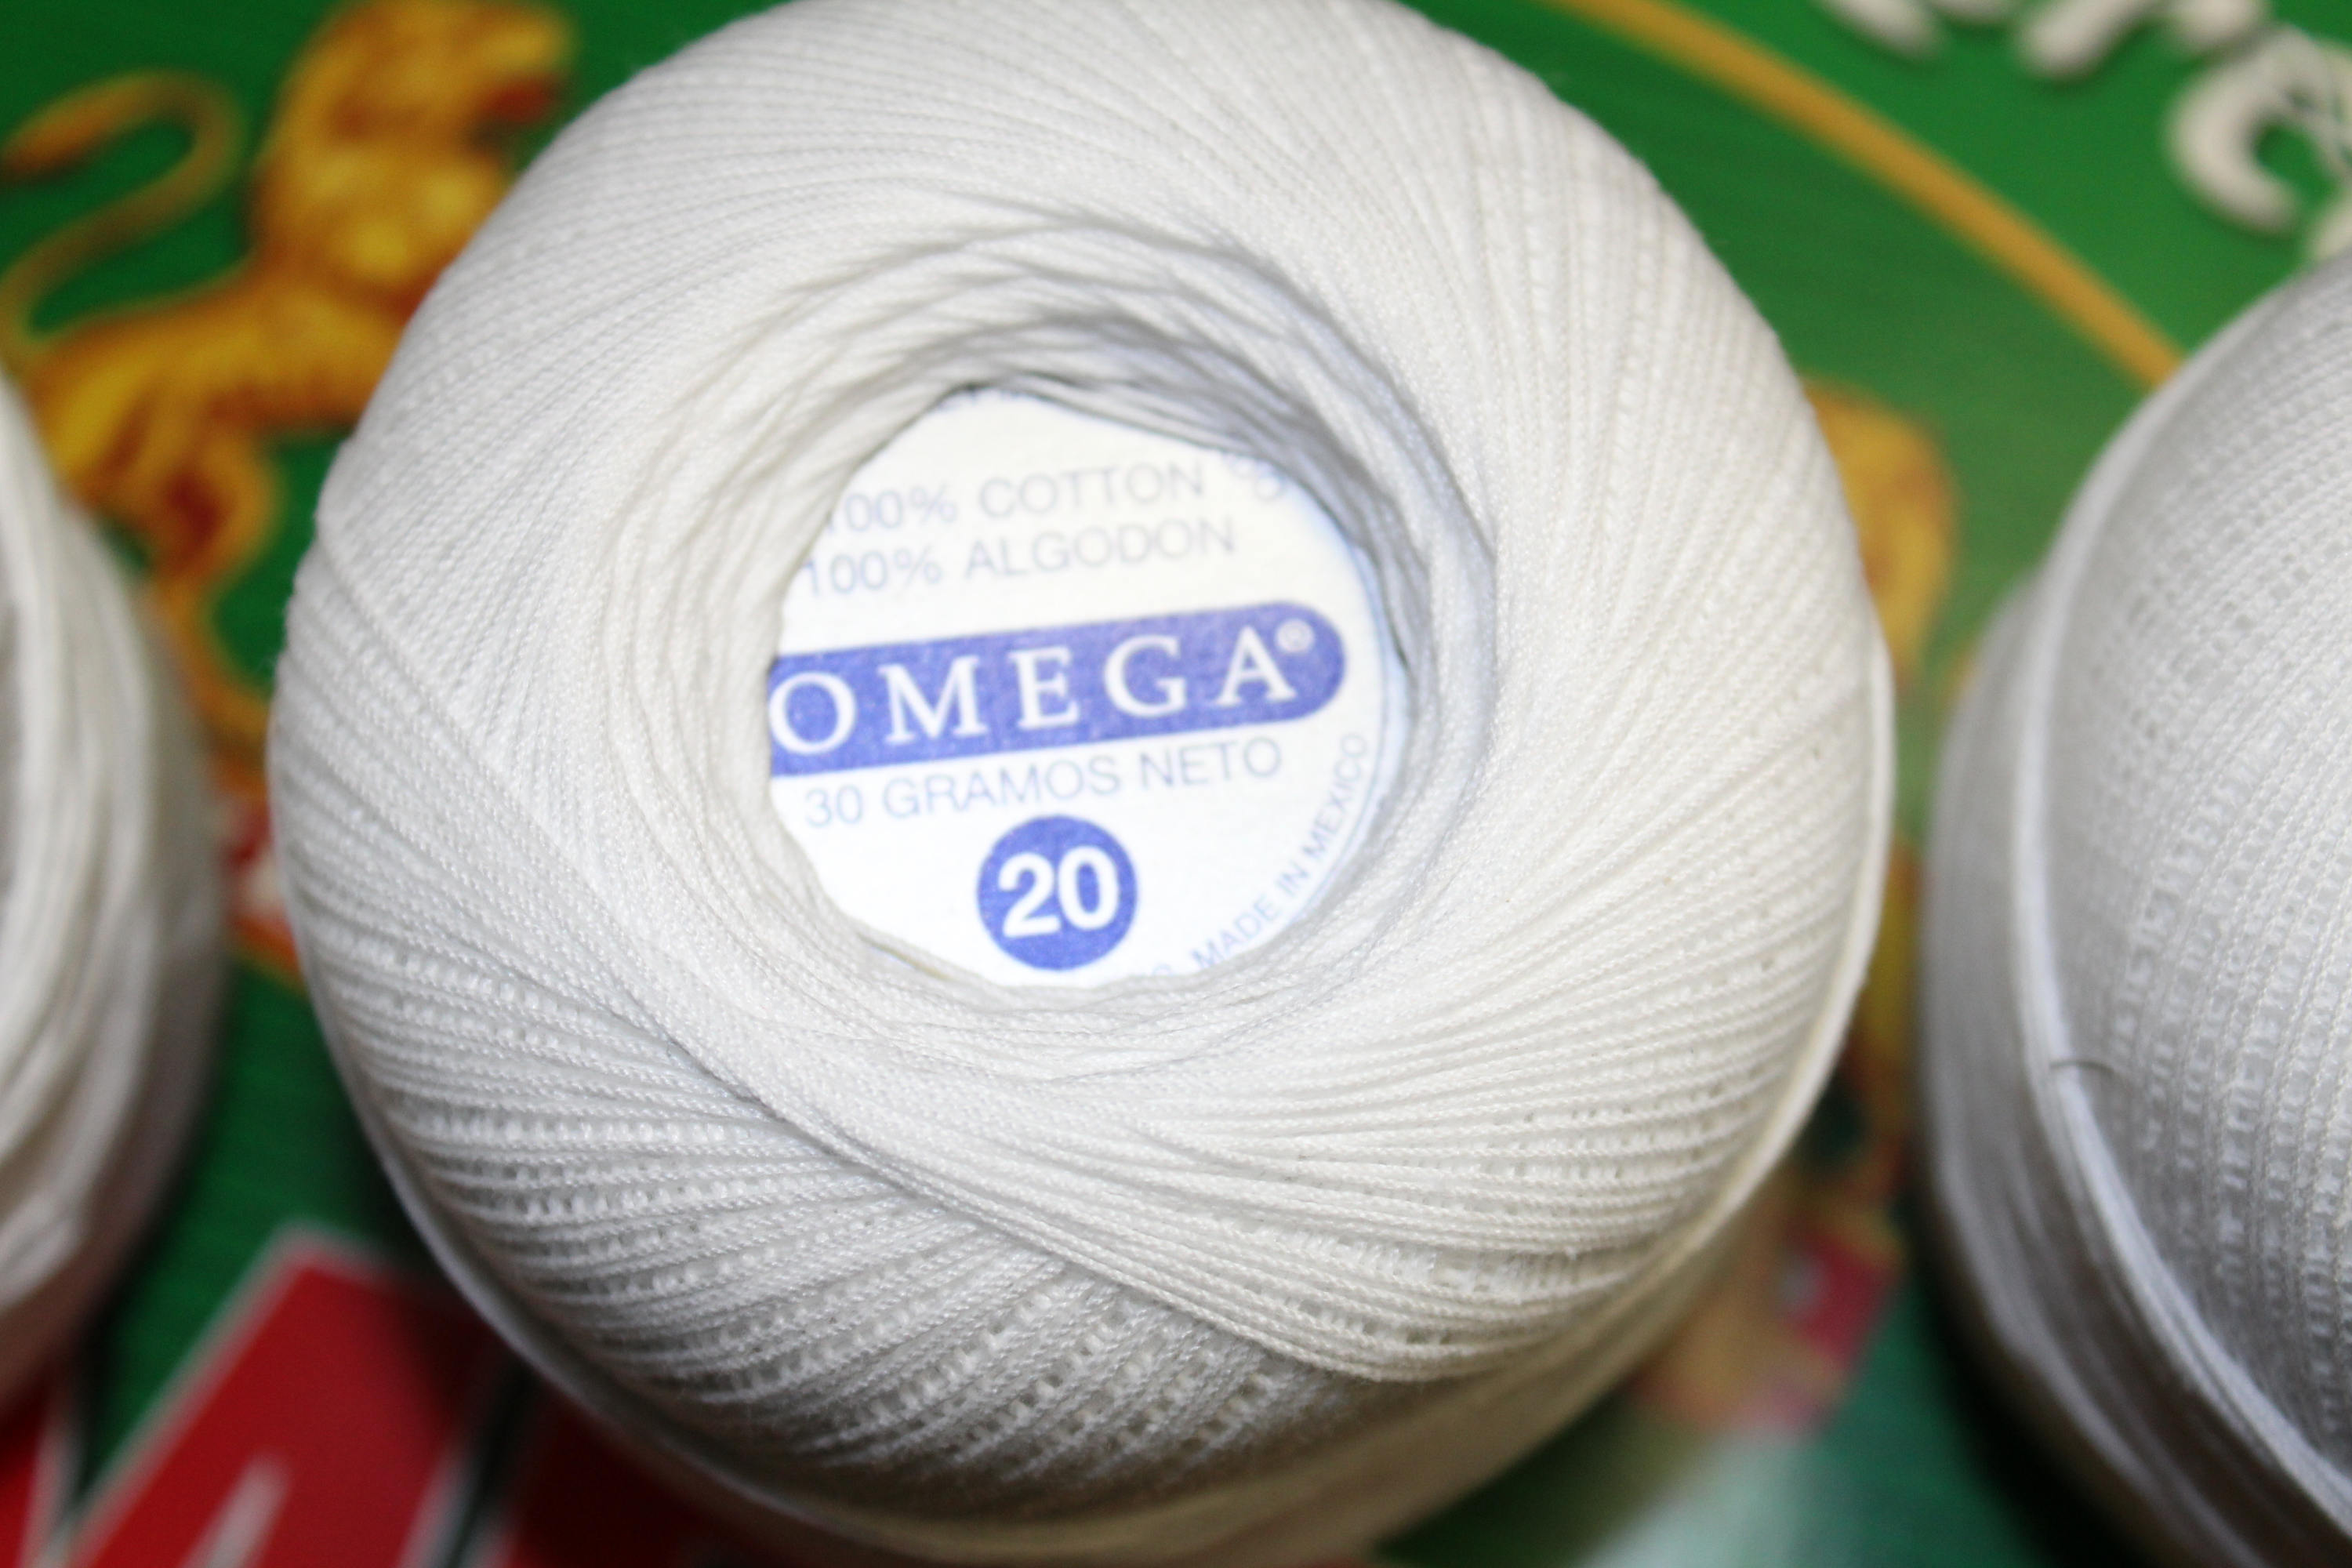 Hilo Crochet Omega #30